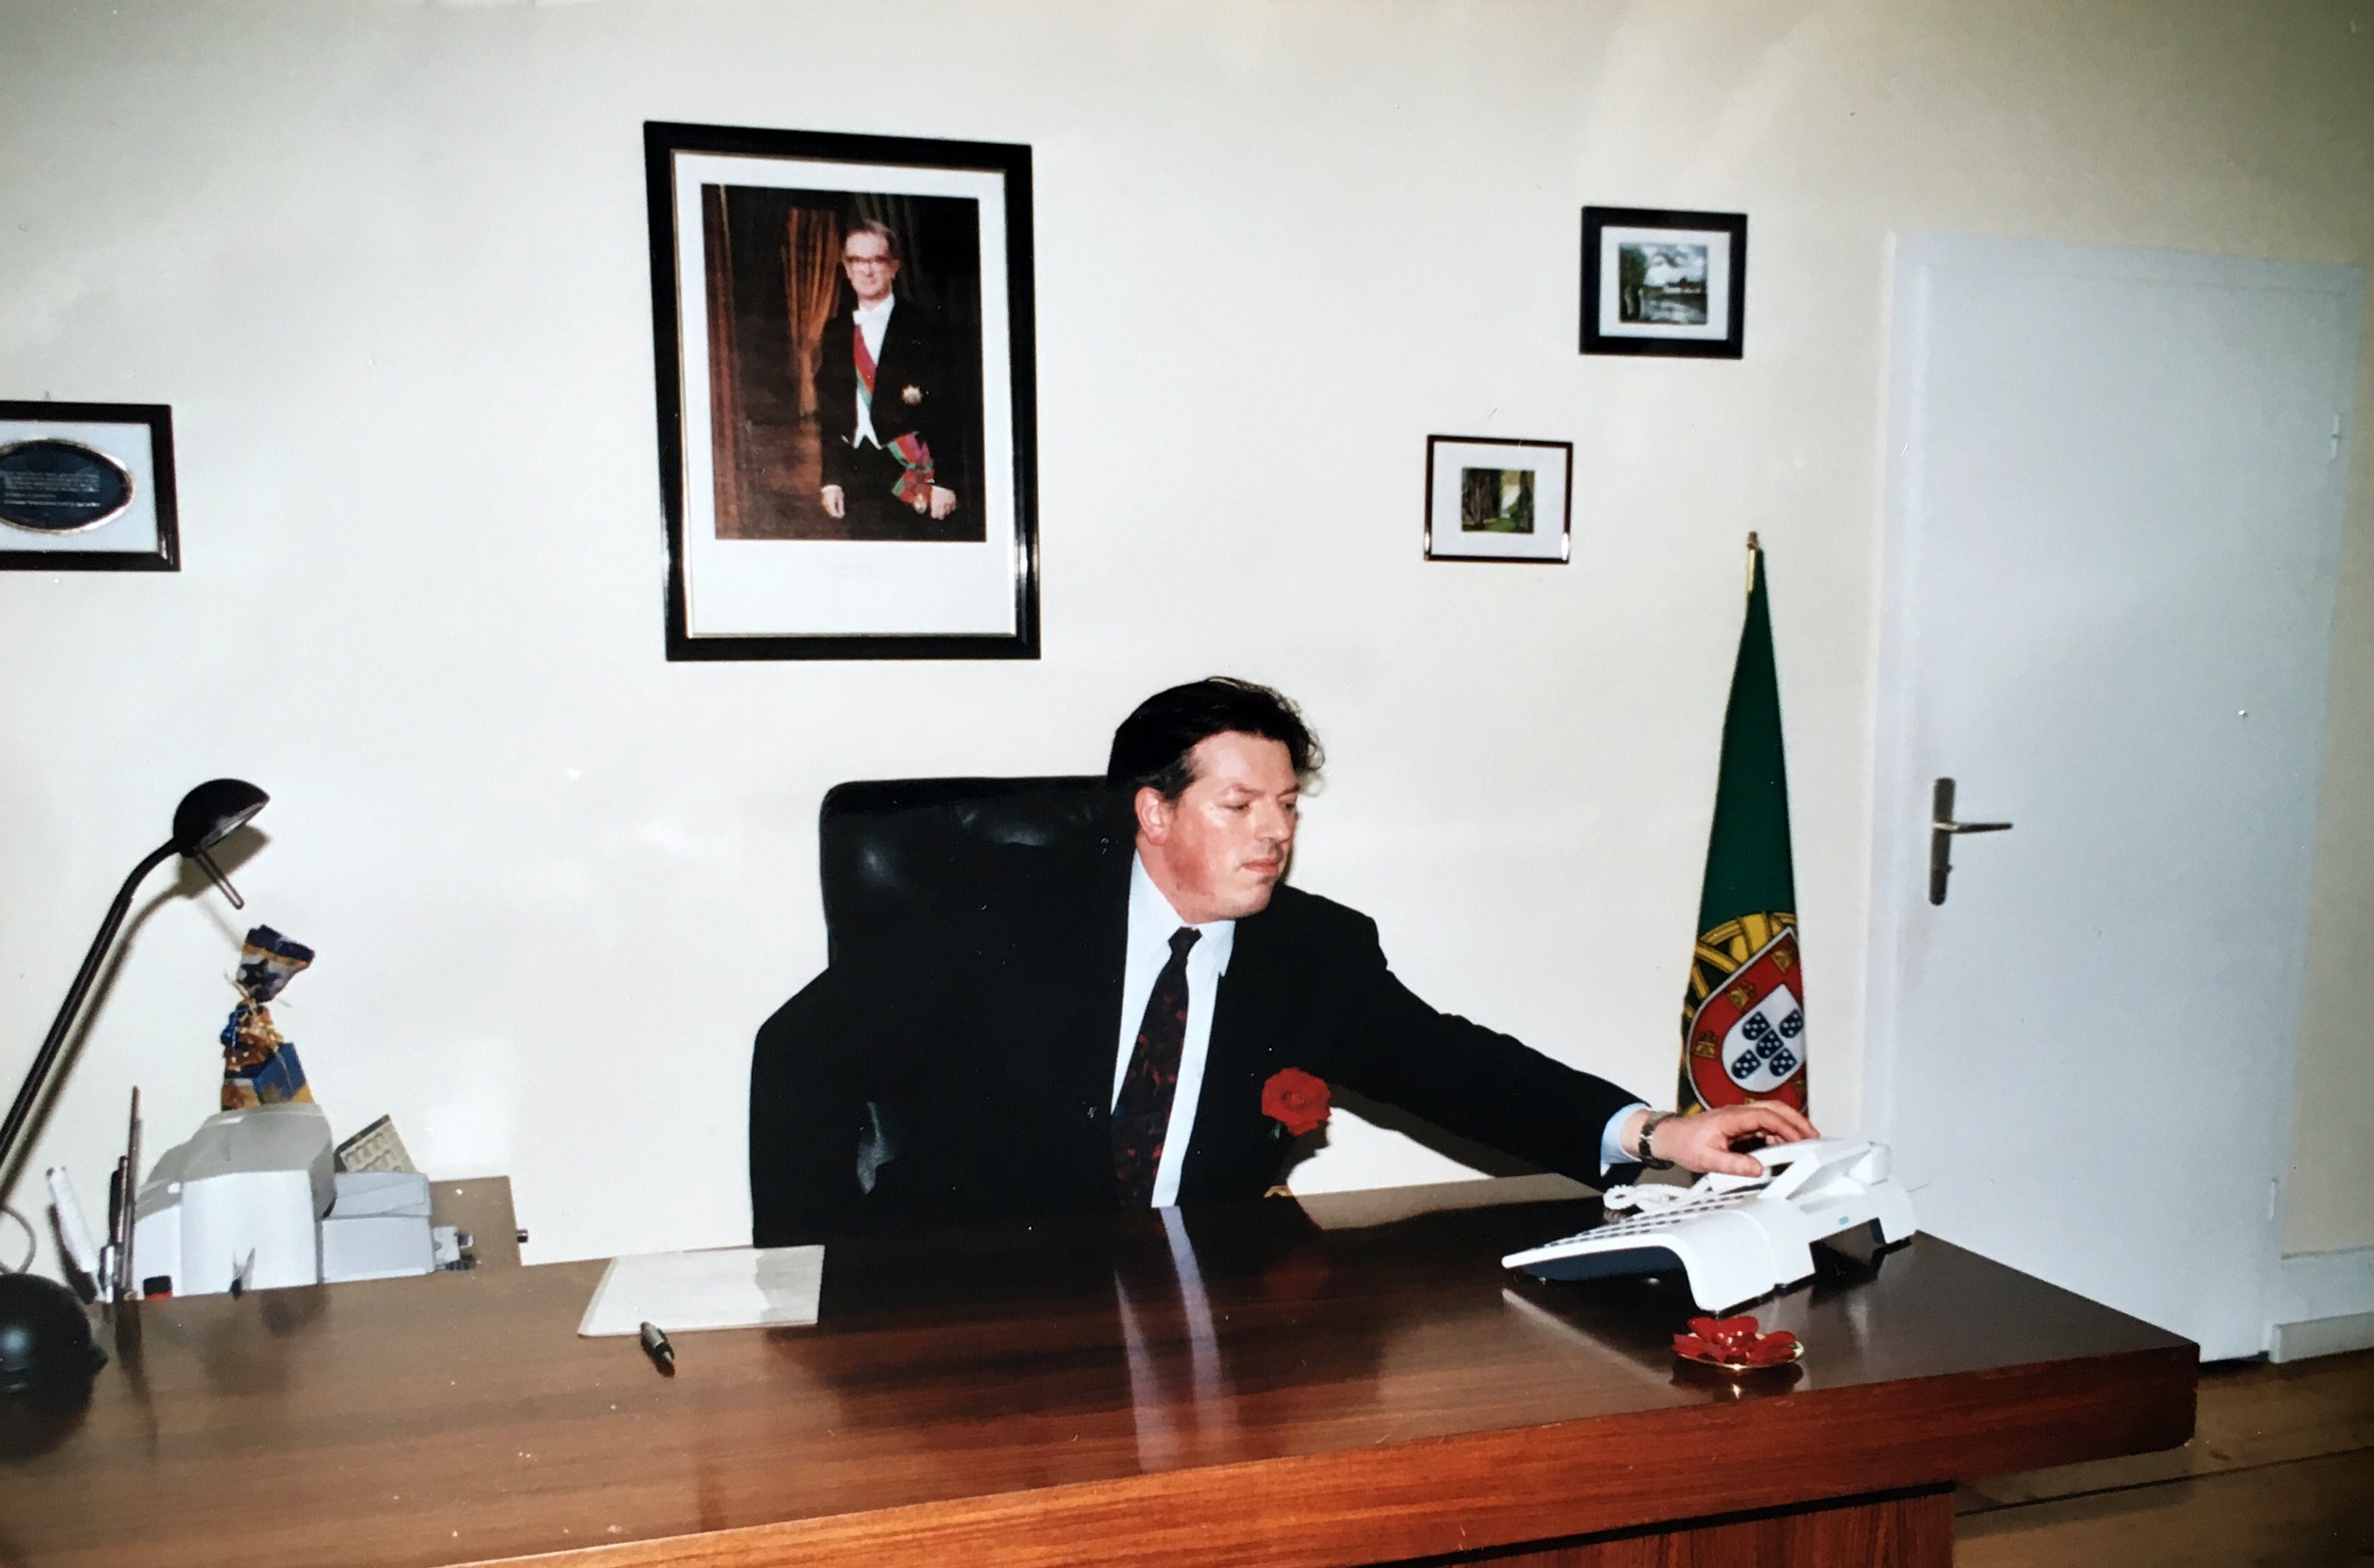 Portuguese Consul in Frankfurt Dec 2003
